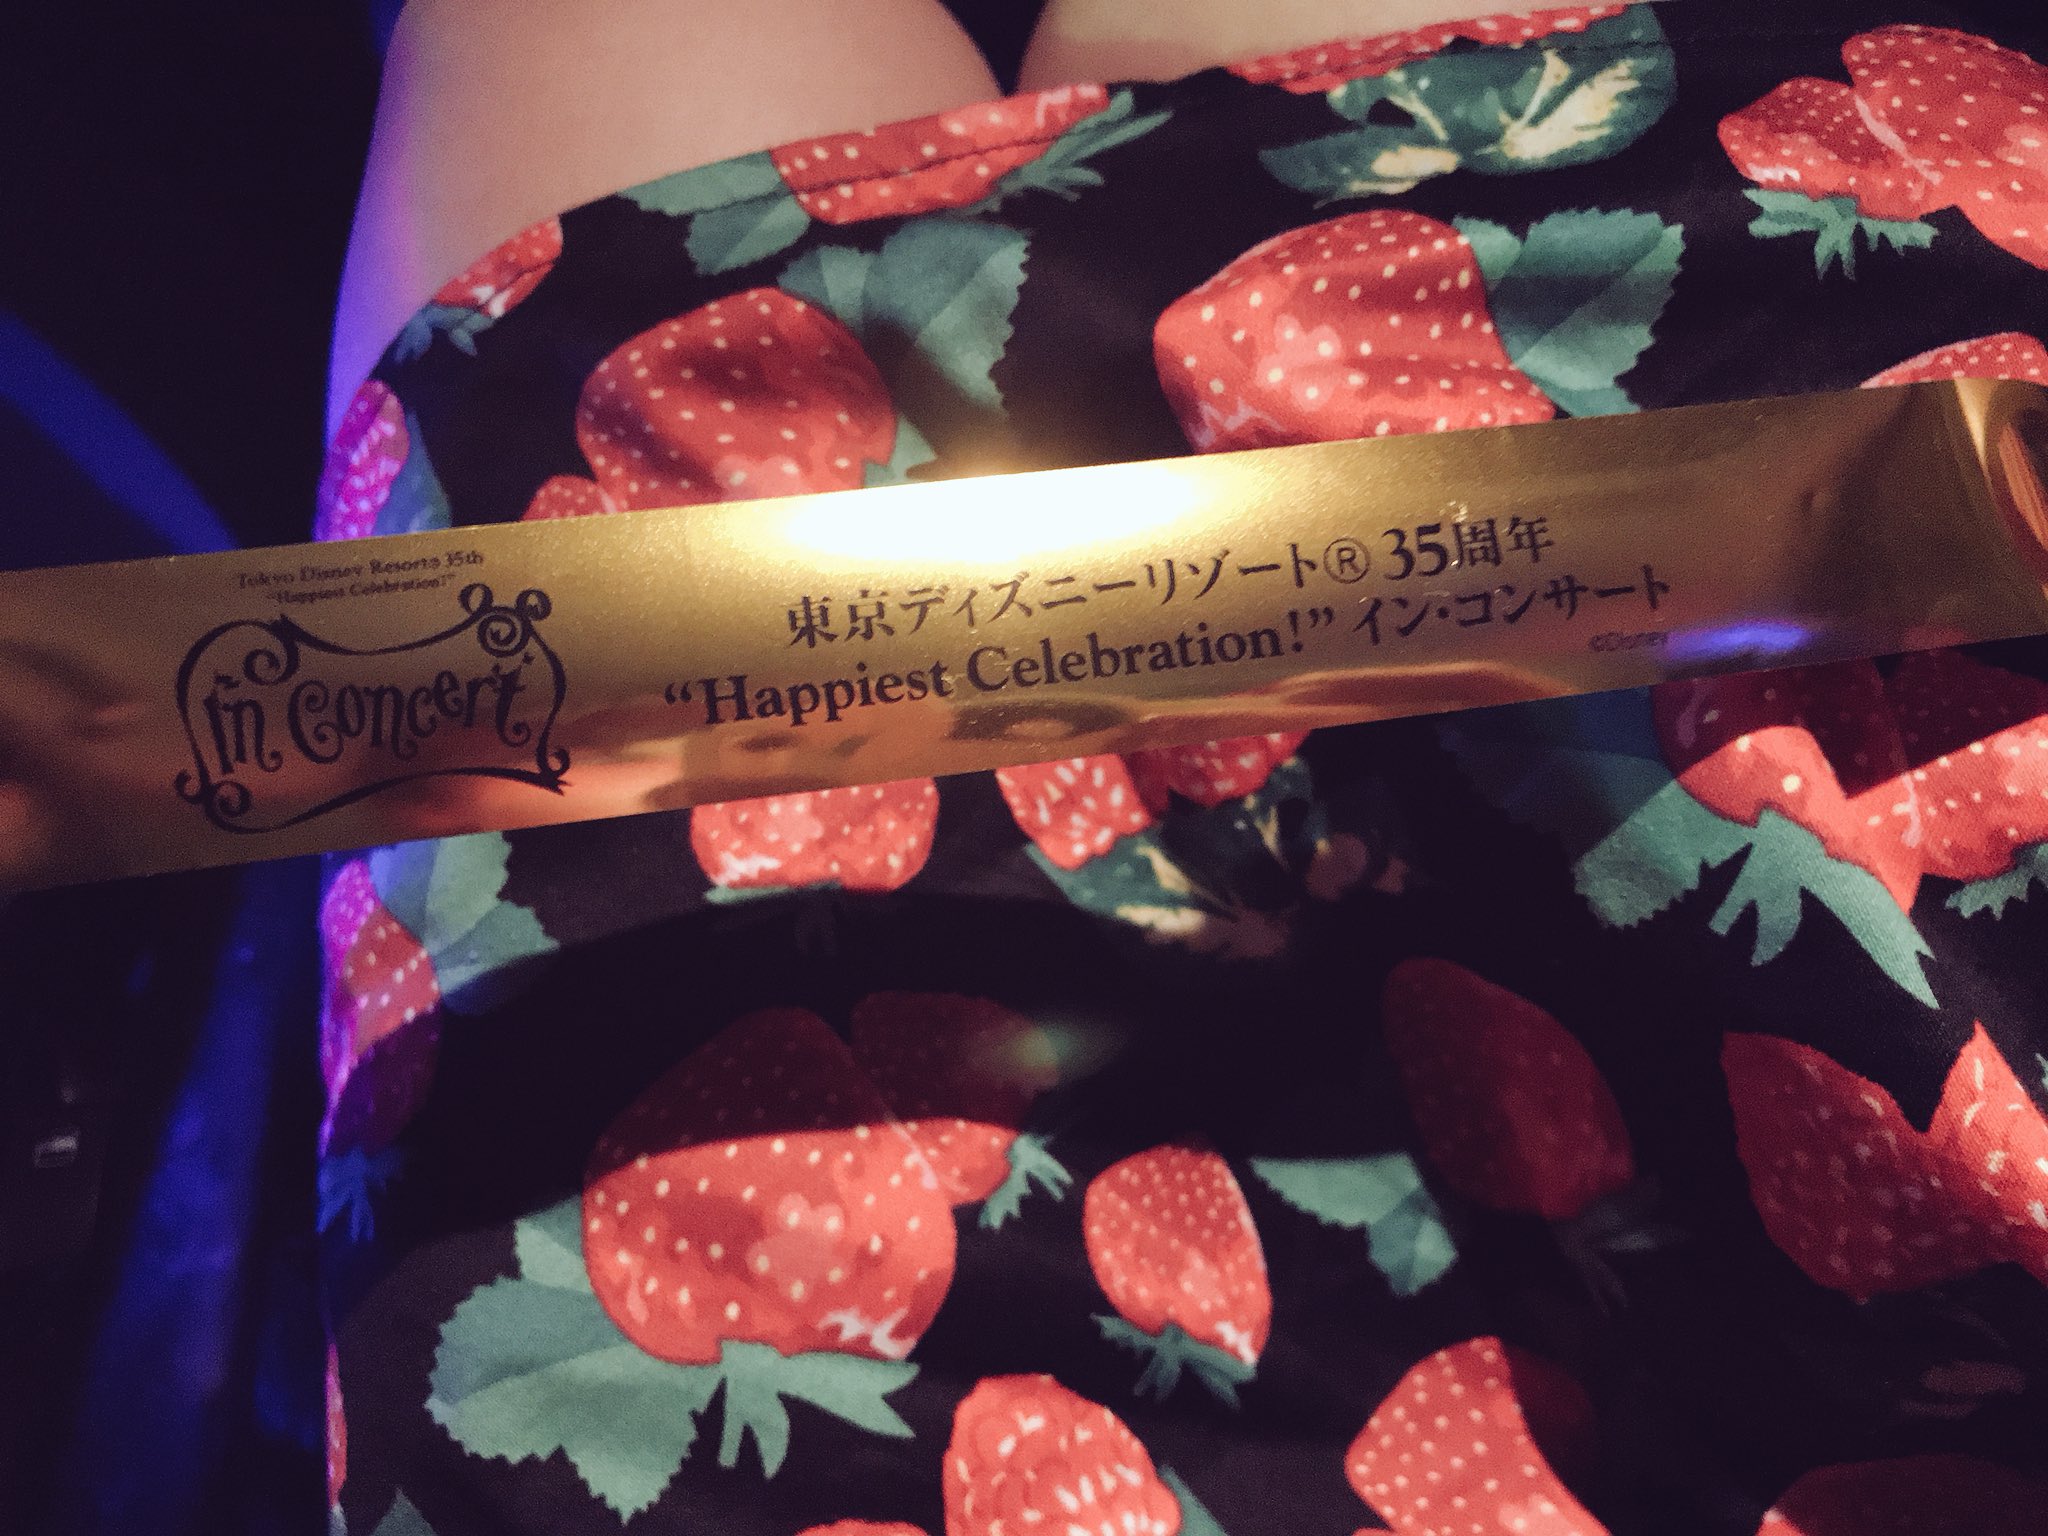 東京ディズニーリゾート 35周年 Happiest Celebration イン コンサート 感想まとめ Twitter